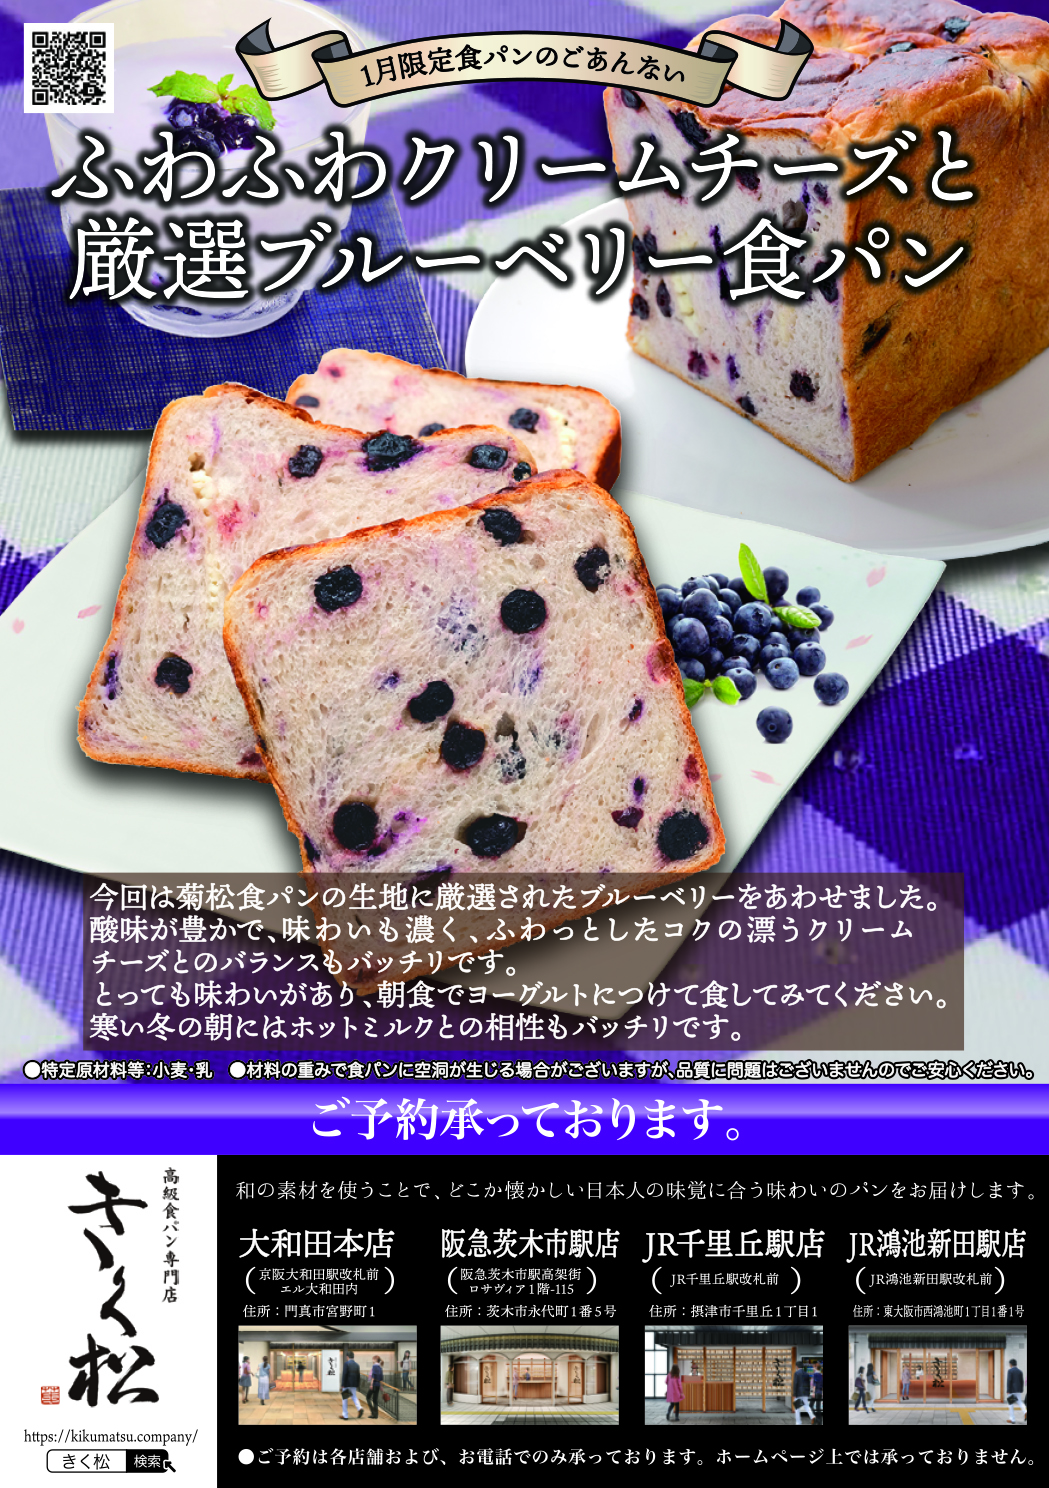 1月の限定食パンは【ふわふわクリームチーズと厳選ブルーベリー食パン】